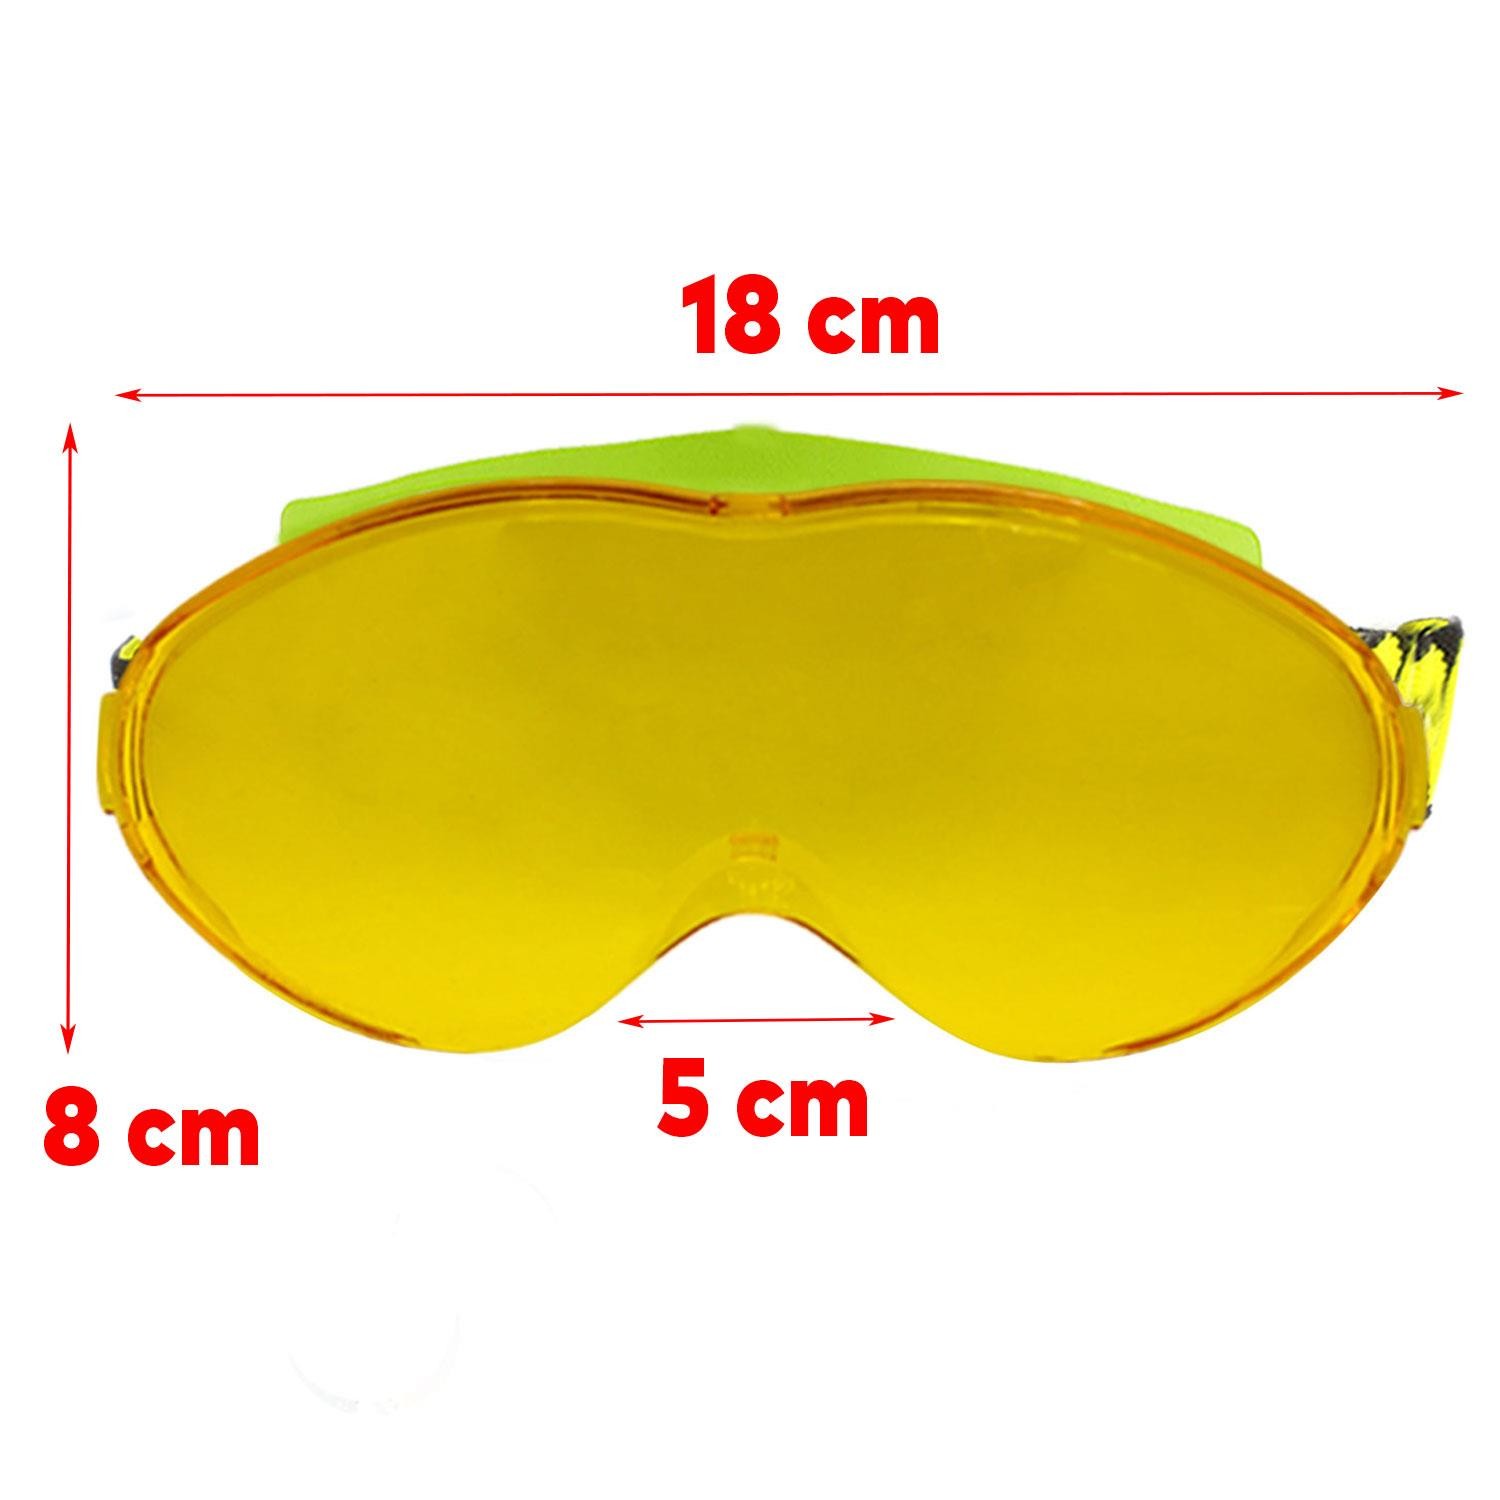 Bellasimo Kayak Gözlüğü Değiştirebilir Camlı Antifog Güneş Kar Gözlük Gümüş Snowboard Glasses Gözlük+1 Adet Yedek Cam (Sarı)